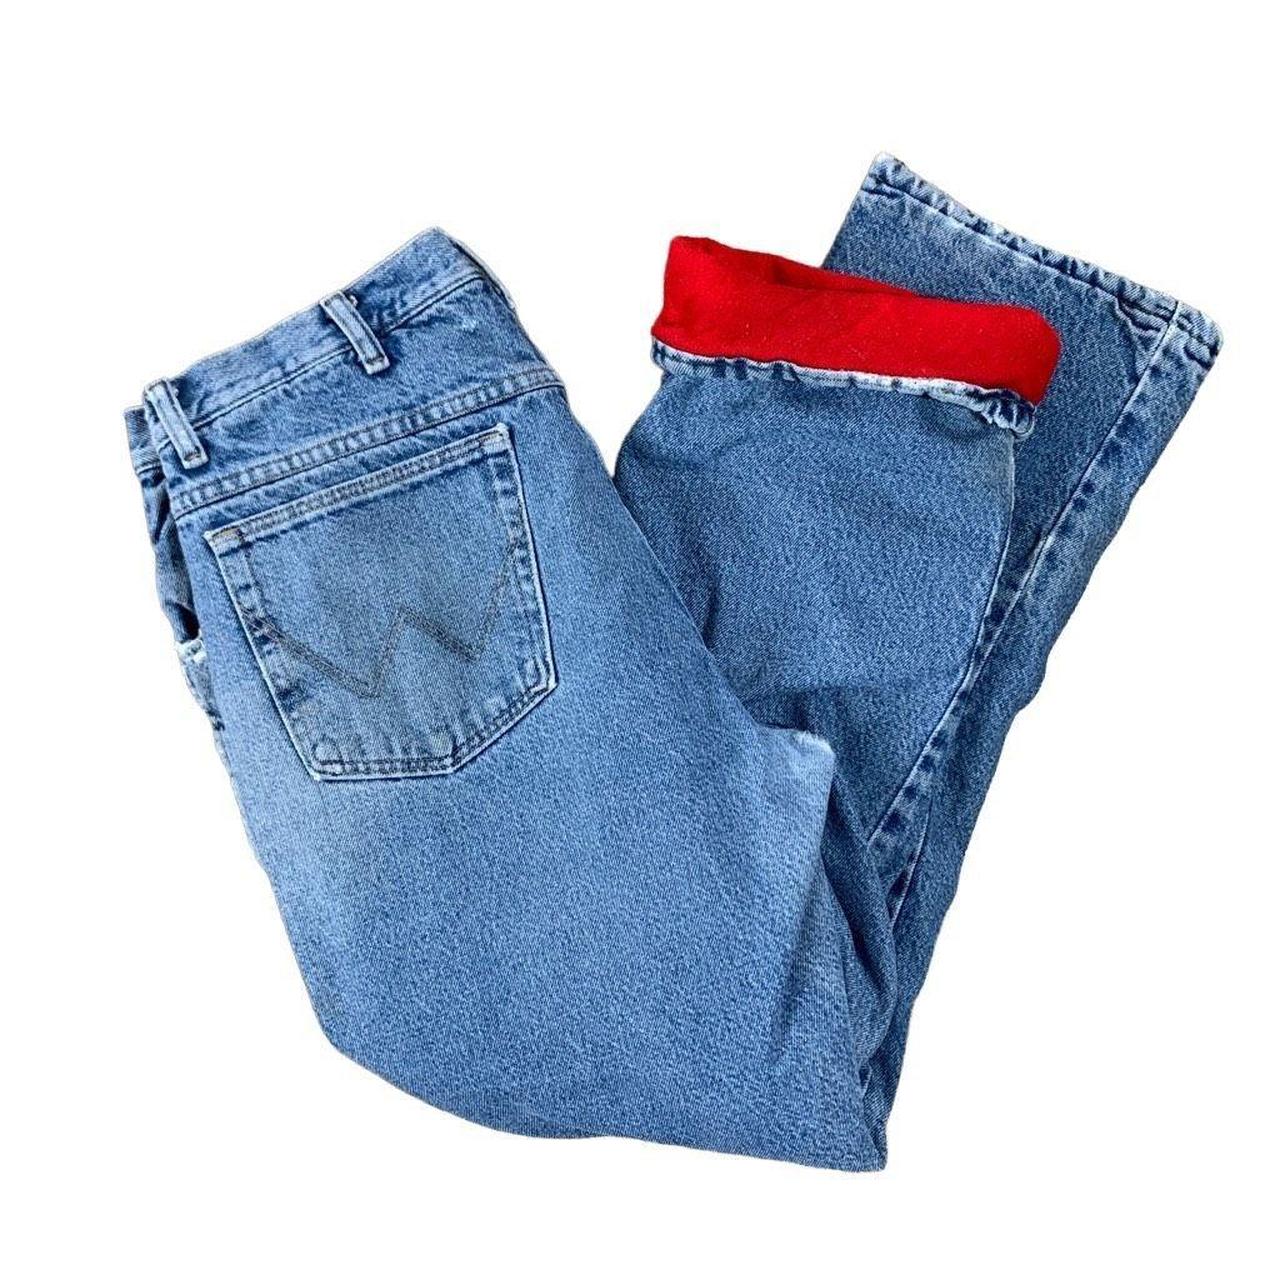 Super cool vintage wrangler fleece lined jeans Size... - Depop